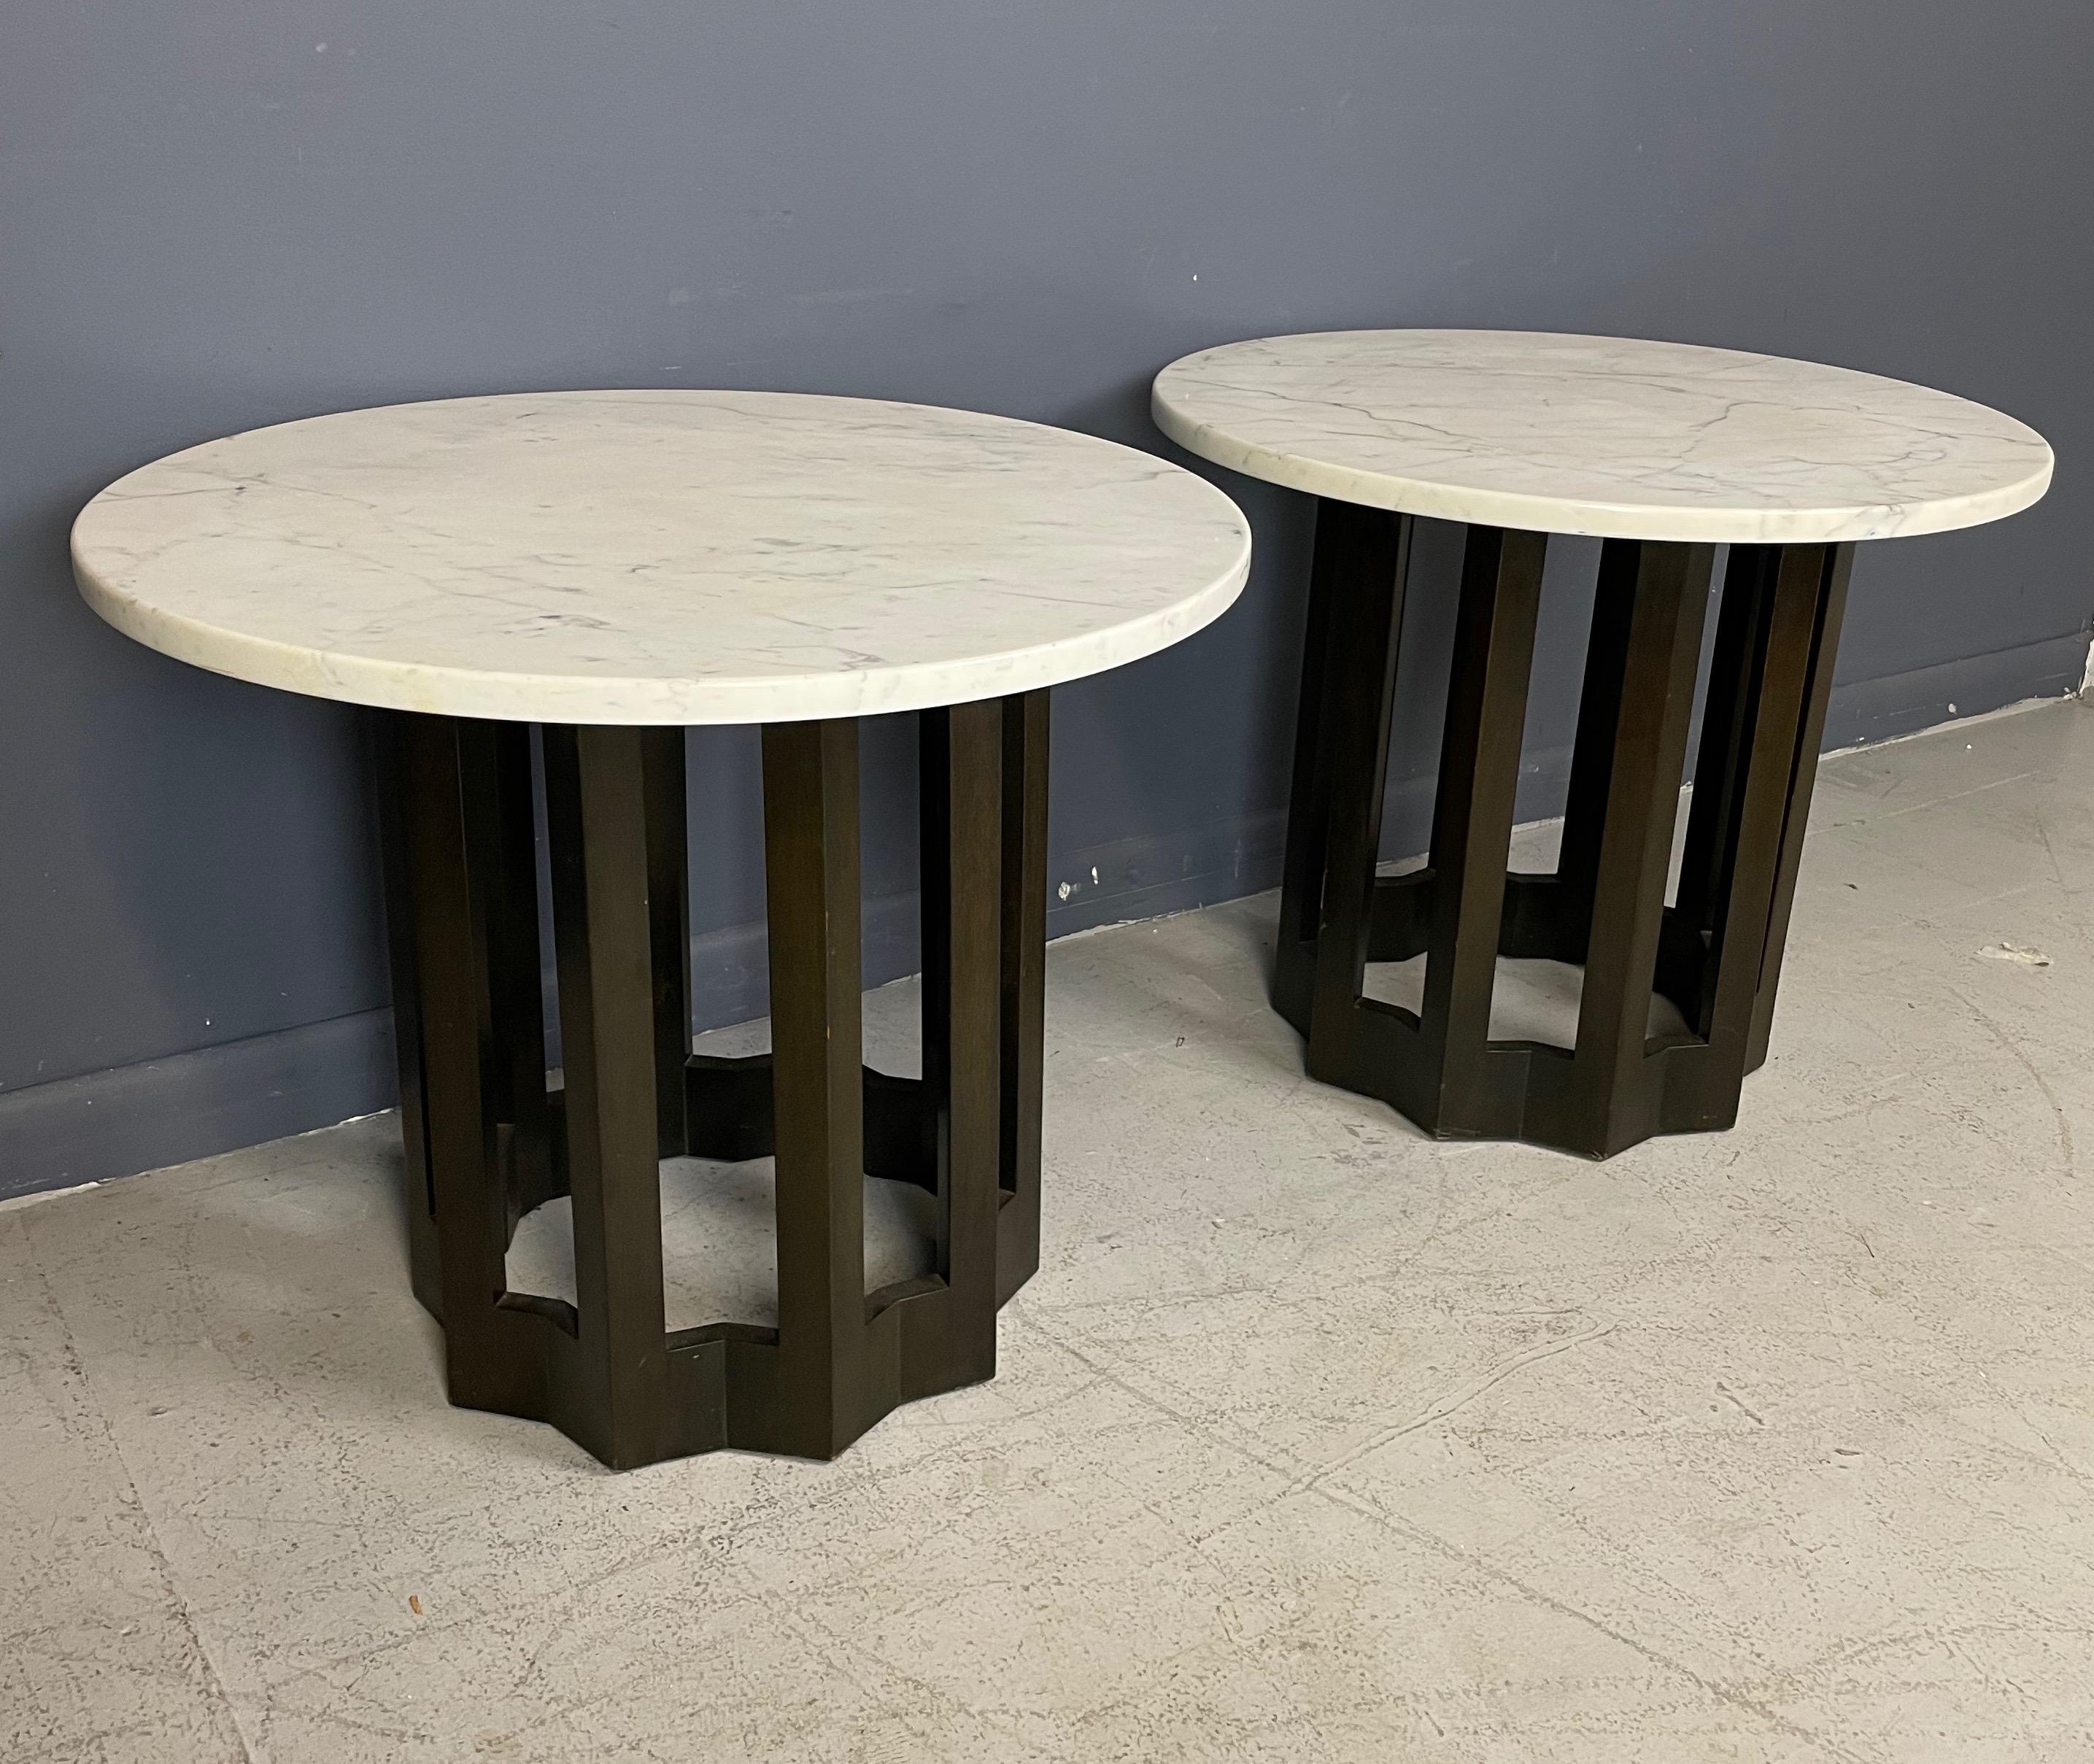 Der klassische Harvey Probber-Tisch mit seinem wellenförmigen Sockel aus Walnussholz und der Platte aus Carrara-Marmor ist ein typisches Probber-Design. Diese Tische sind ein echter Hingucker!